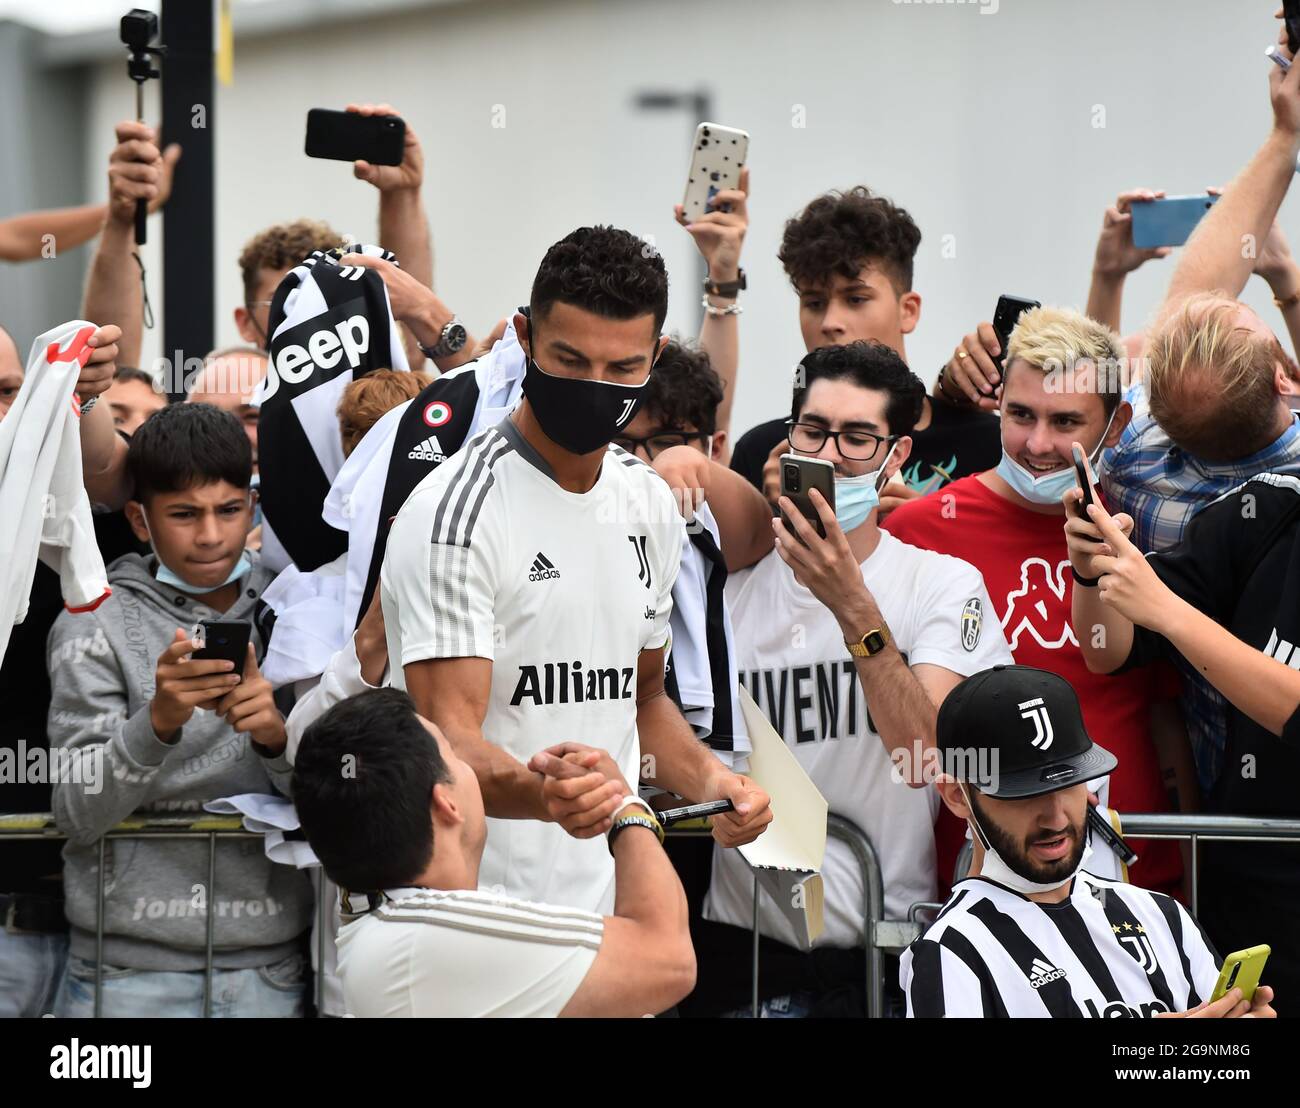 TURIN, le 27 juillet 2021 (Xinhua) -- Cristiano Ronaldo (C), l'avant portugais de Juventus, interagit avec les fans lorsqu'il arrive pour son examen médical au centre médical de Juventus à Turin, Italie, le 26 juillet 2021. (Xinhua) Banque D'Images